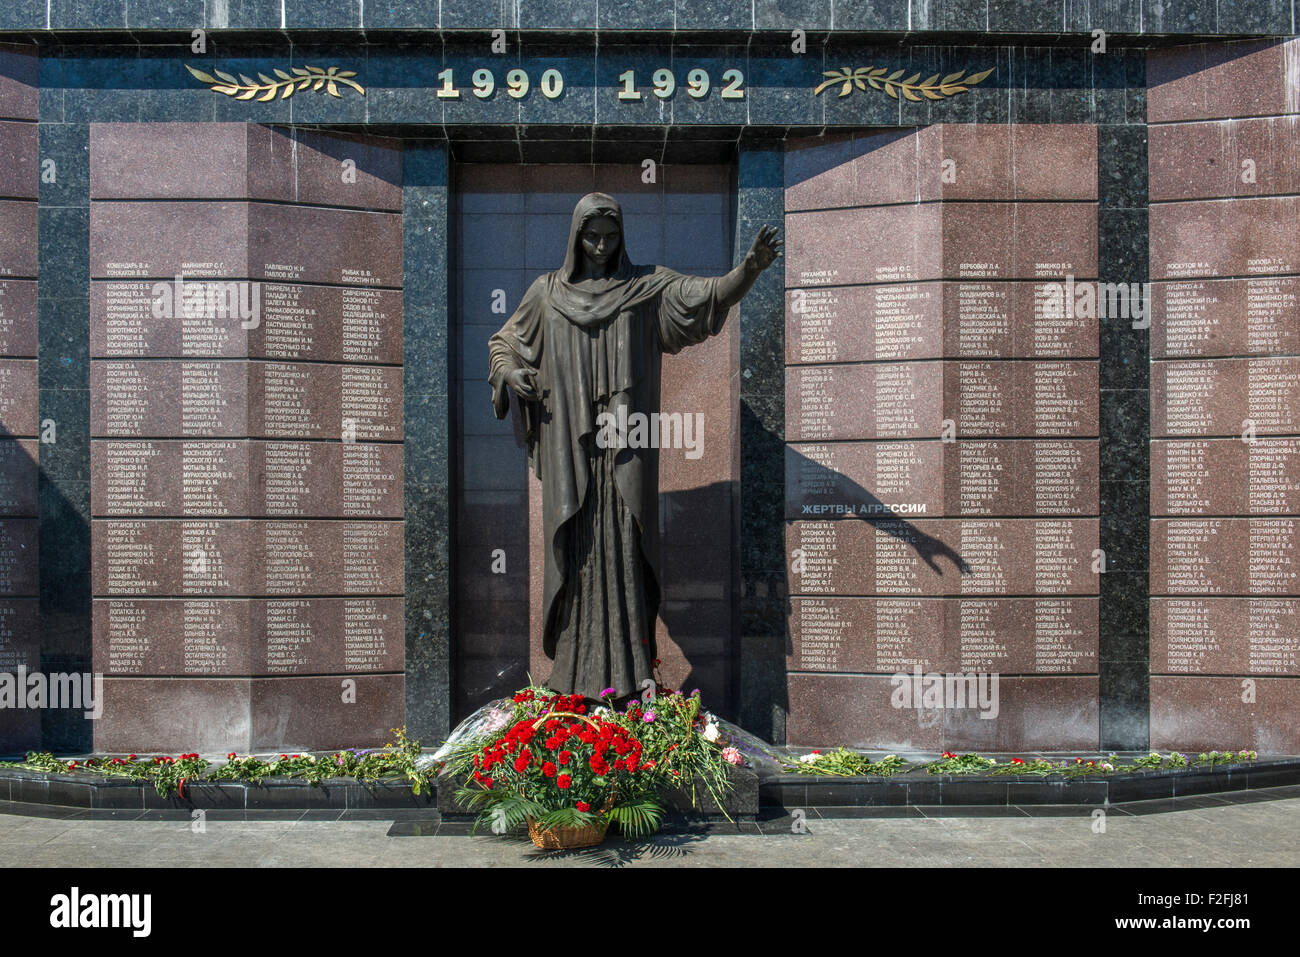 25-jähriges Jubiläum der Schewtschenko moldauischen Republik PMR, Transnistrien, sowjetische UdSSR Moldau Republik Moldau War Memorial Stockfoto